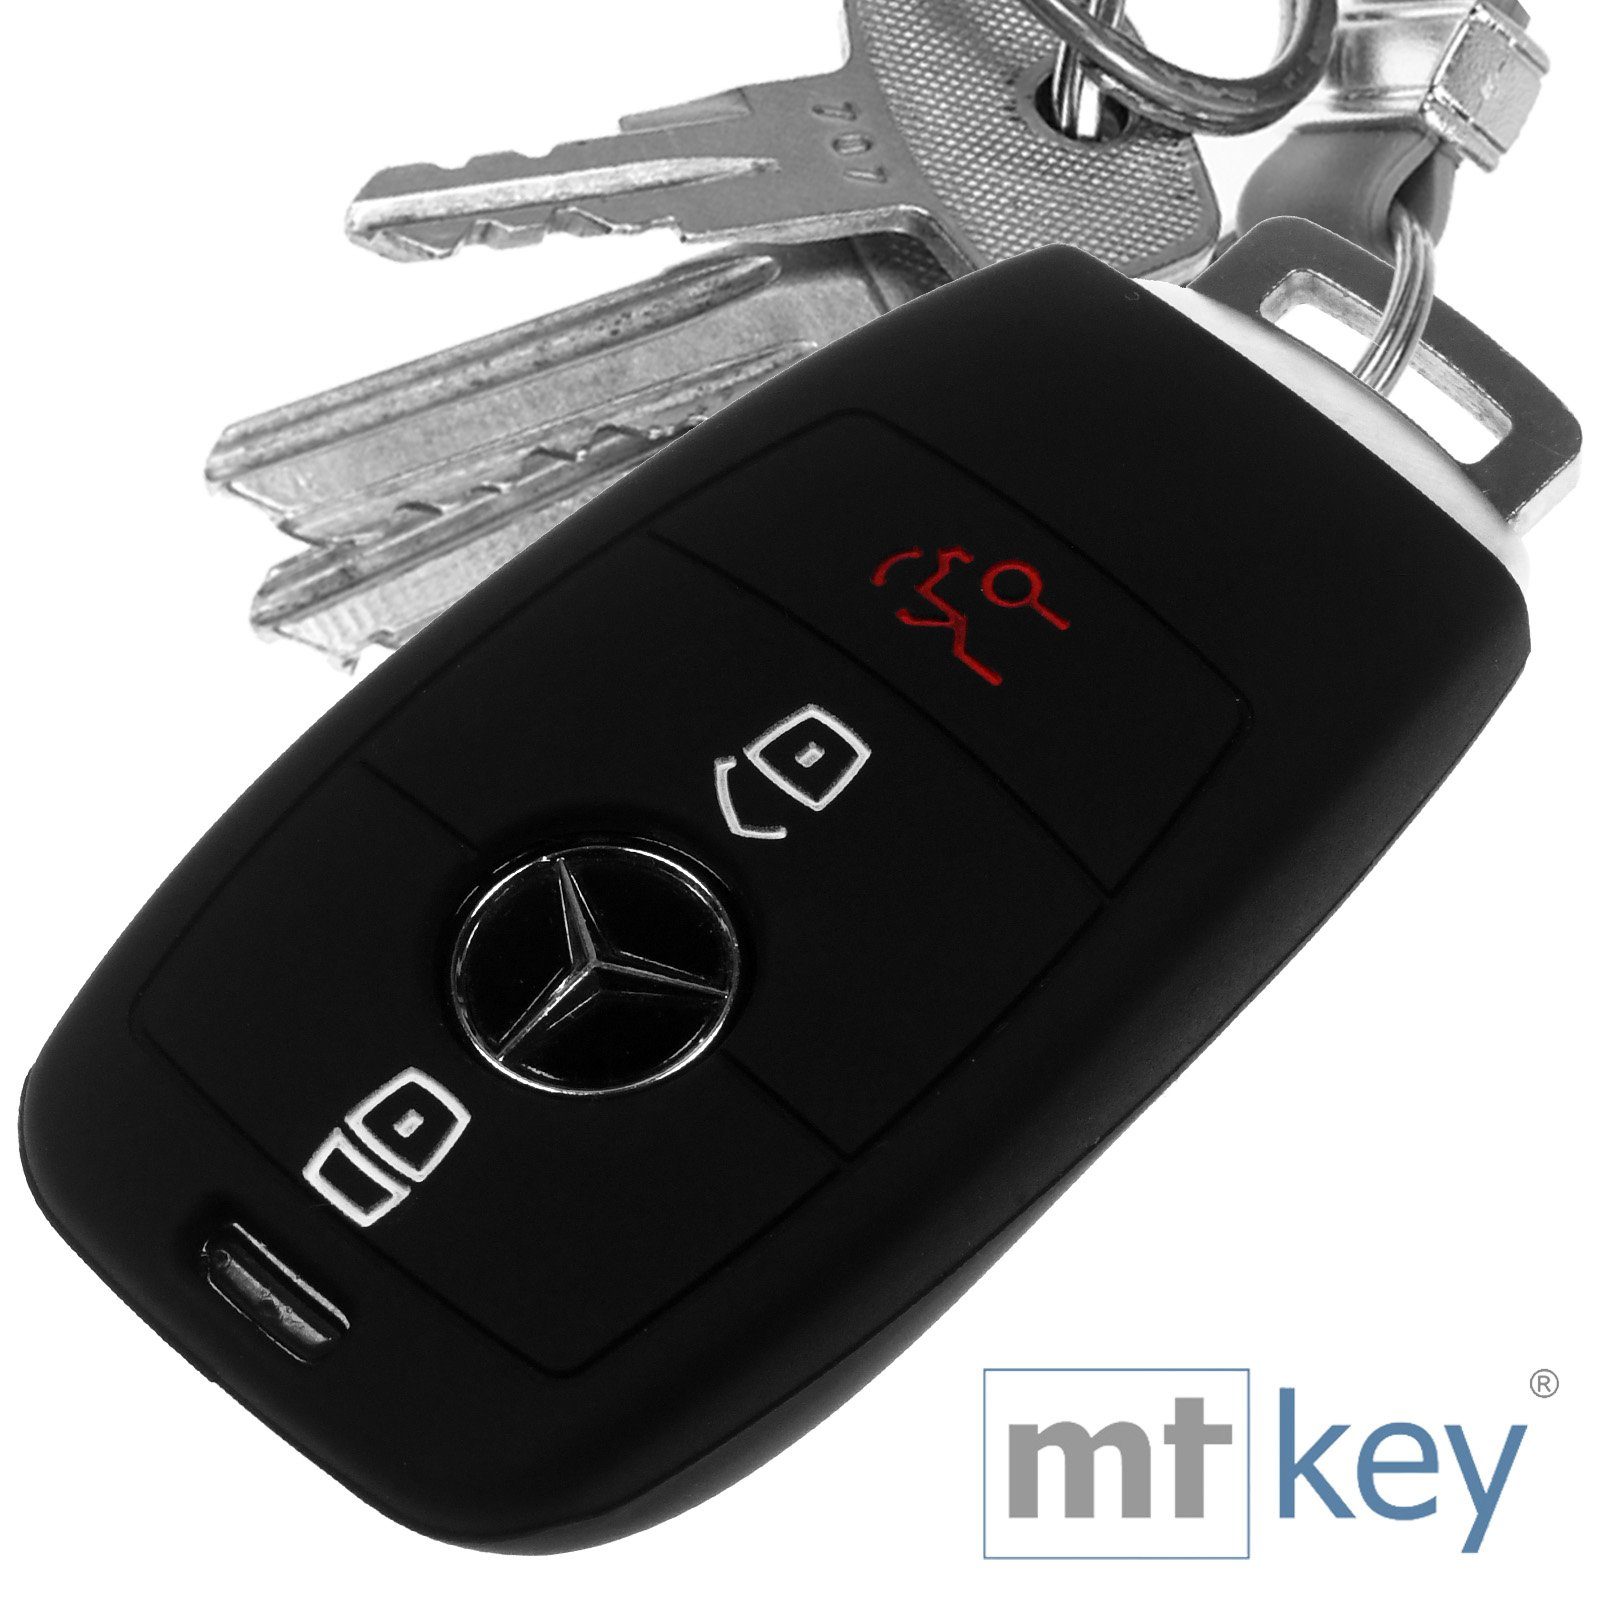 mt-key Schlüsseltasche Autoschlüssel Softcase Silikon Schutzhülle Schwarz, für Mercedes Benz E-Klasse W213 S213 C238 A238 3 Tasten KEYLESS